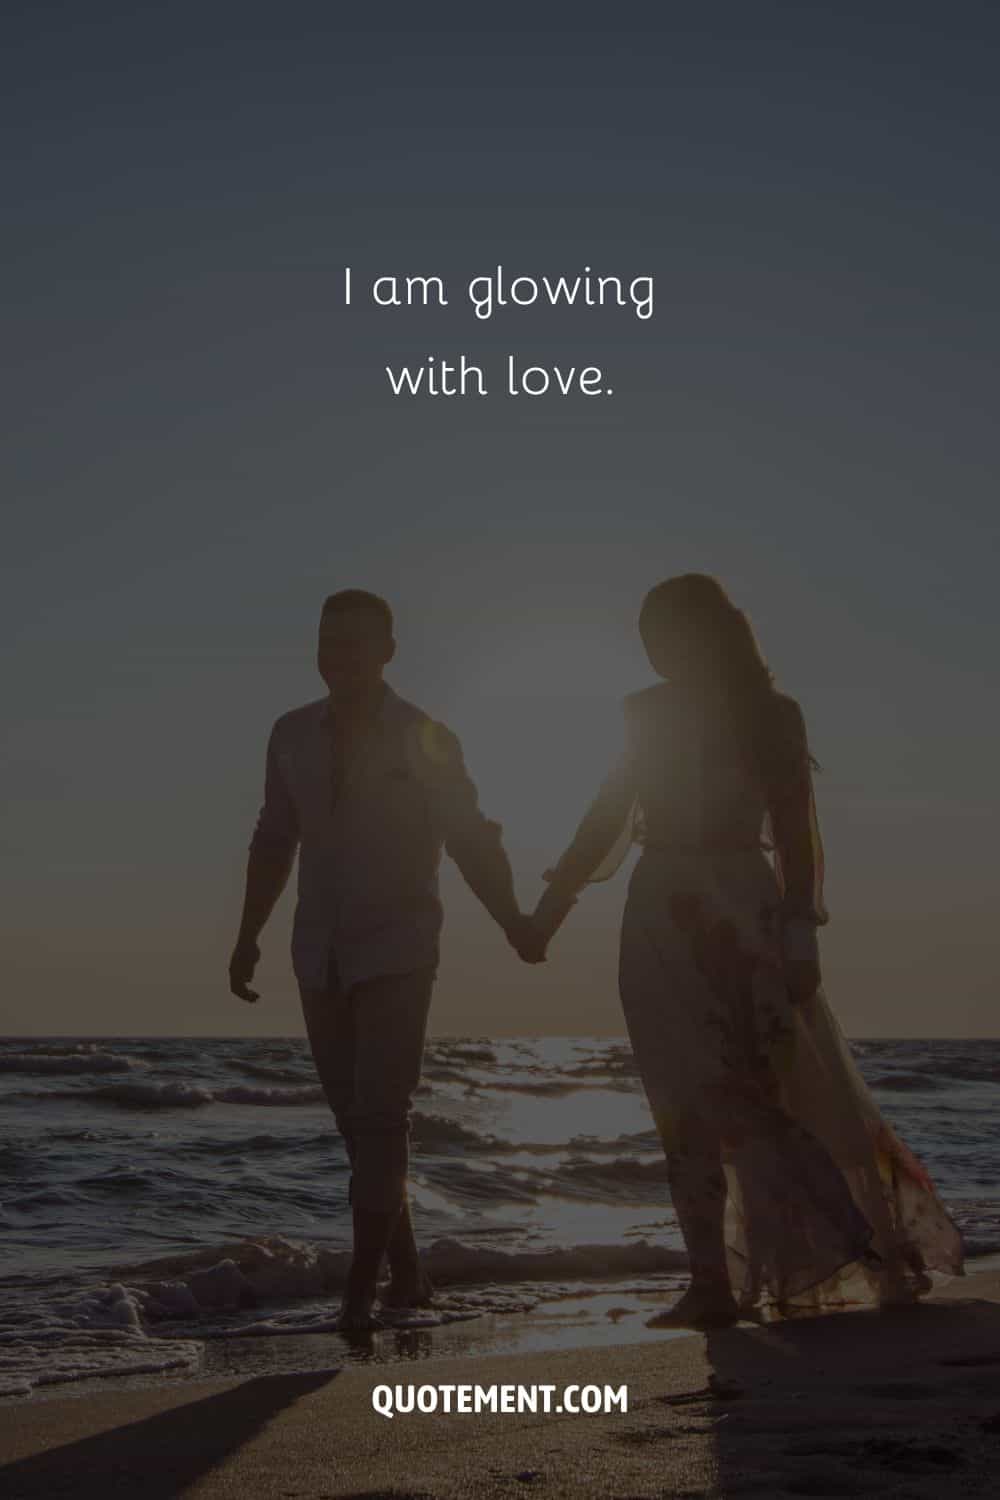 Imagen de un romántico paseo por la playa que representa una afirmación para atraer el amor.